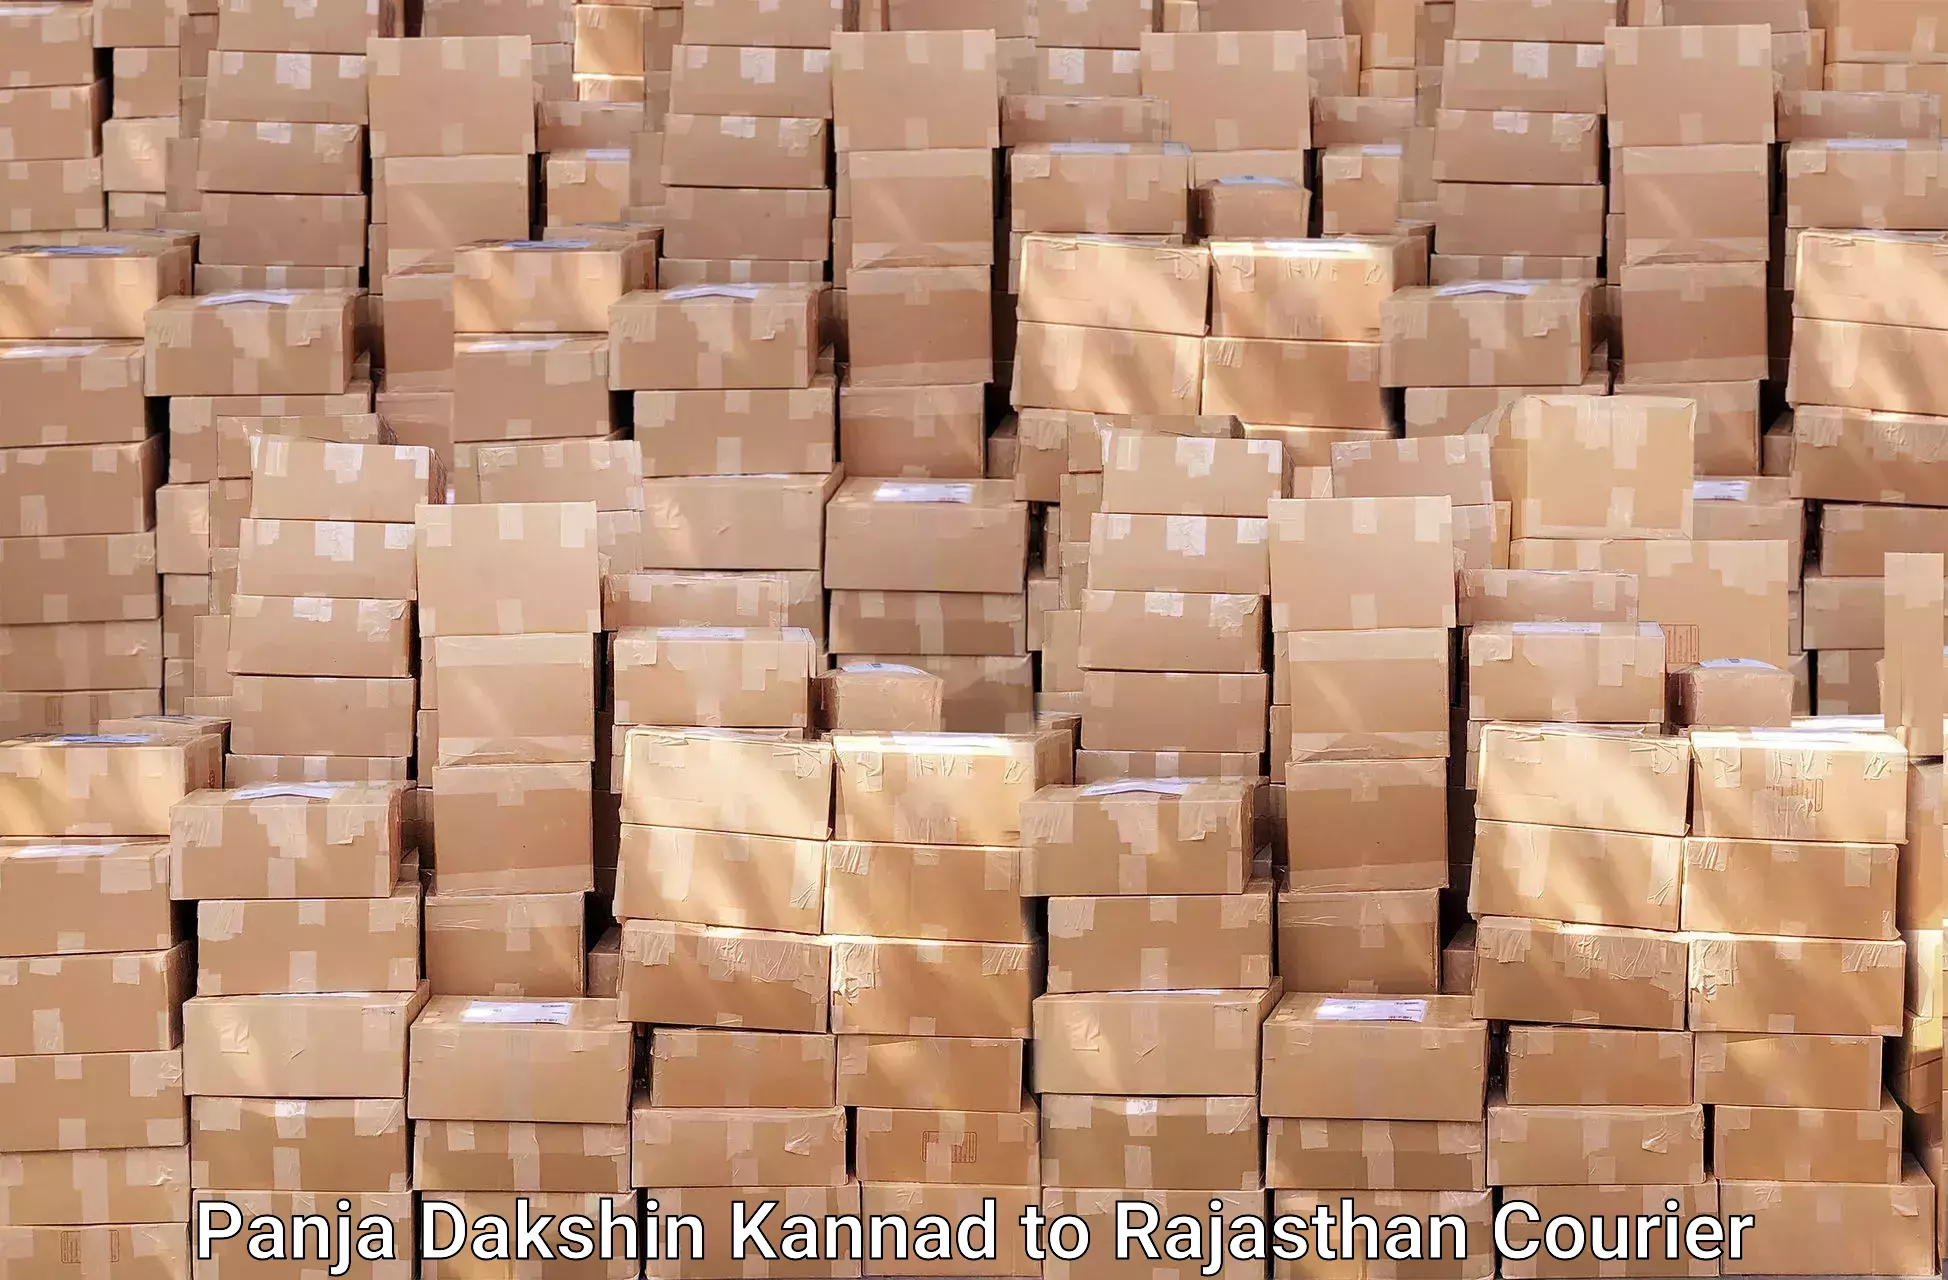 Skilled furniture transporters Panja Dakshin Kannad to Rajasthan